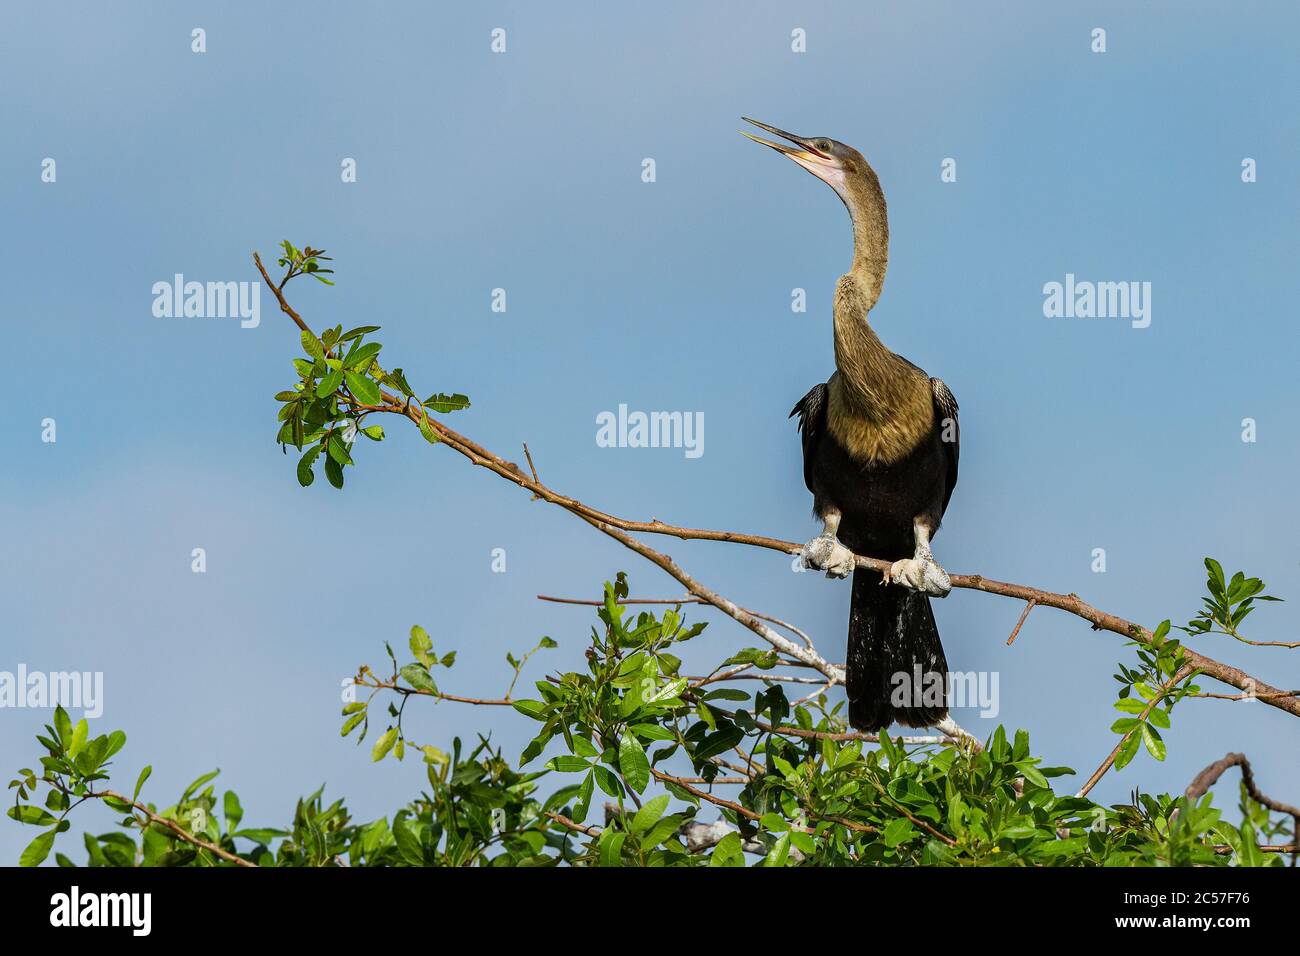 An Anhinga (Anhinga anhinga) perched in a tree at Venice rookery, Florida, USA Stock Photo